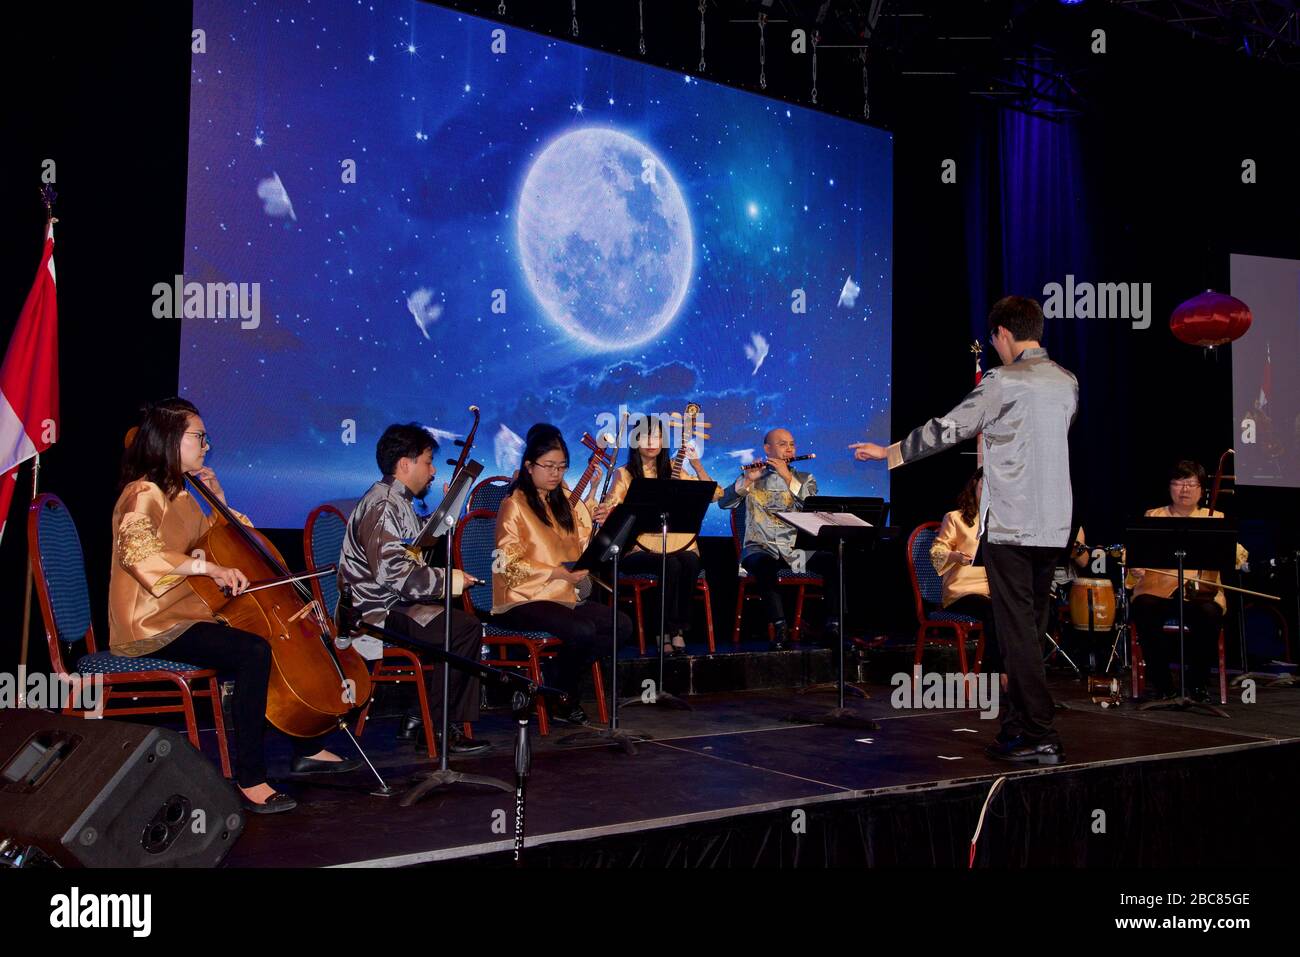 Orchestra cinese suonata al Mid Autumn Moon Festival presso il Toronto Chinese Community Center Foto Stock